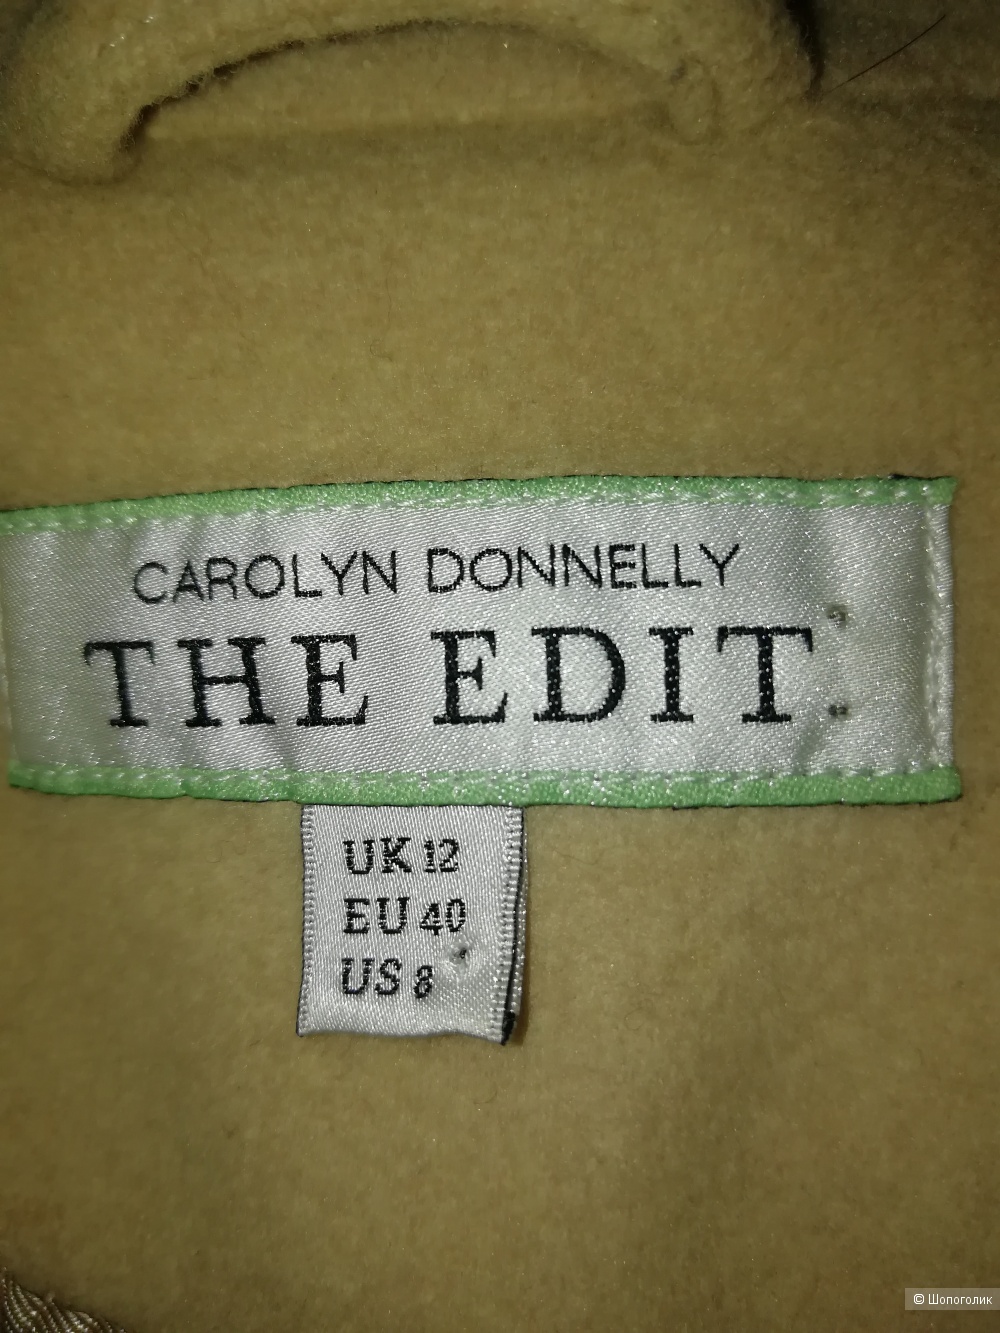 Пальто Carolyn Donnelly The Edit 12 размера одежды uk, 40 eur , 48-50 rus